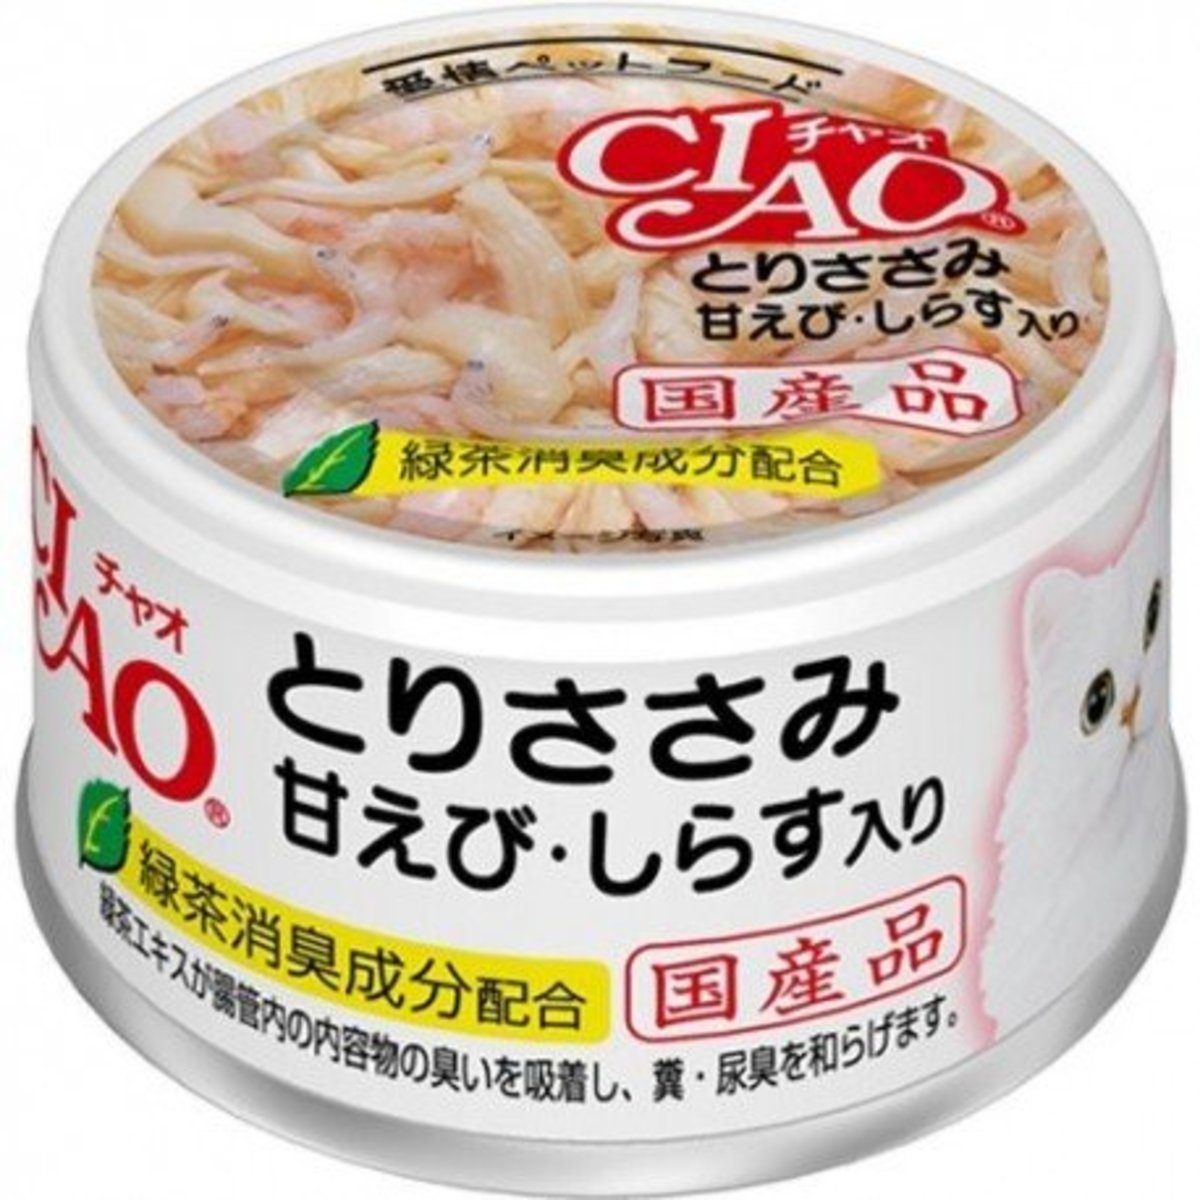 CIAO 貓罐頭雞肉甜蝦x白飯魚 85g